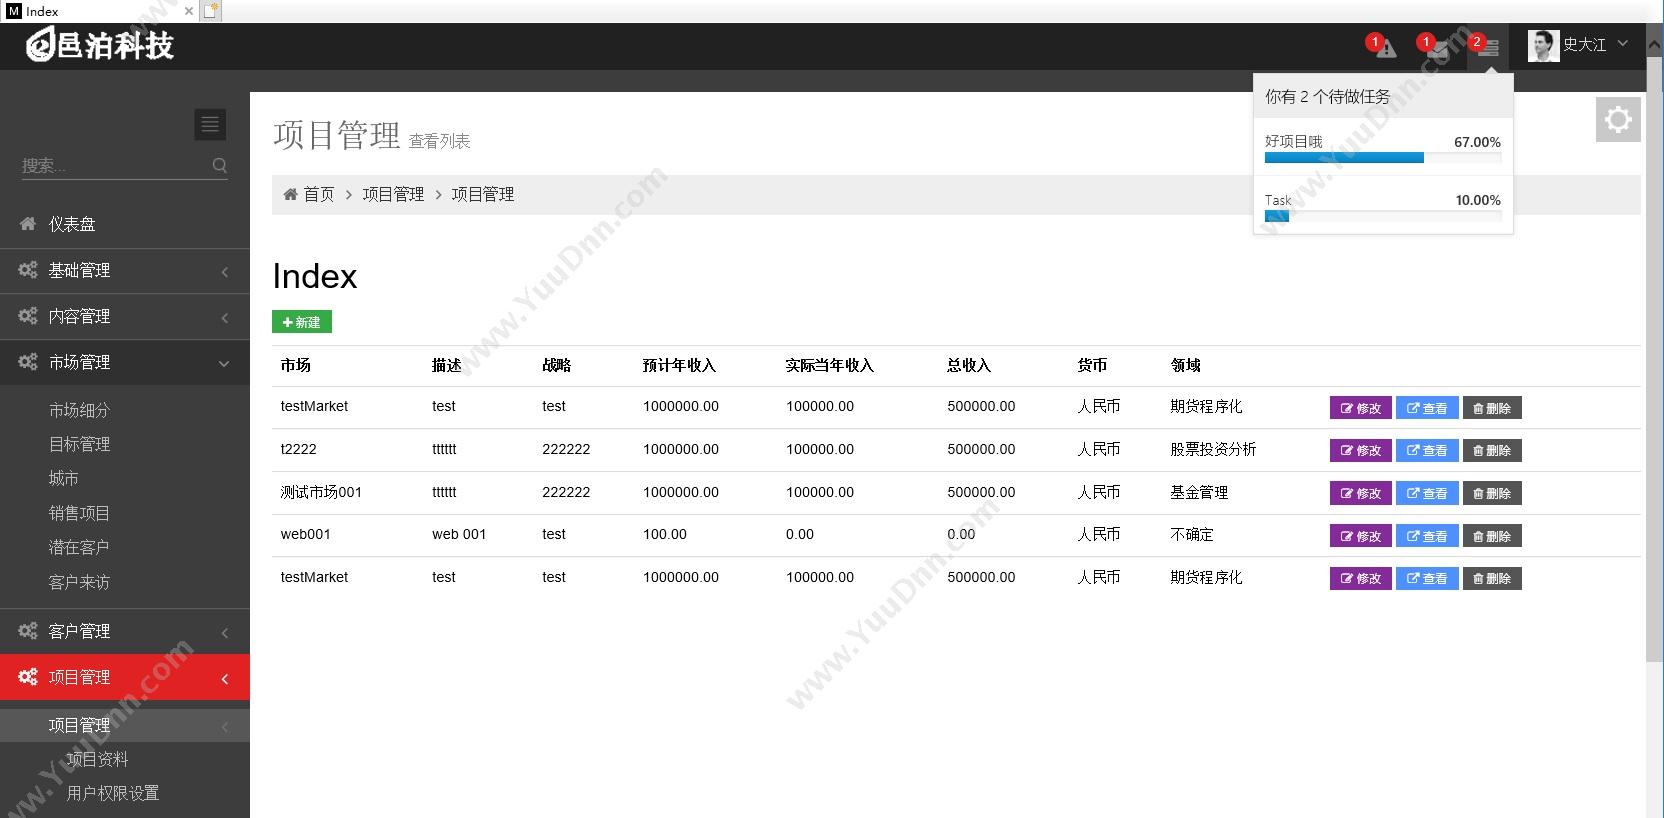 上海邑泊信息科技有限公司 邑泊企业管理信息系统 项目管理